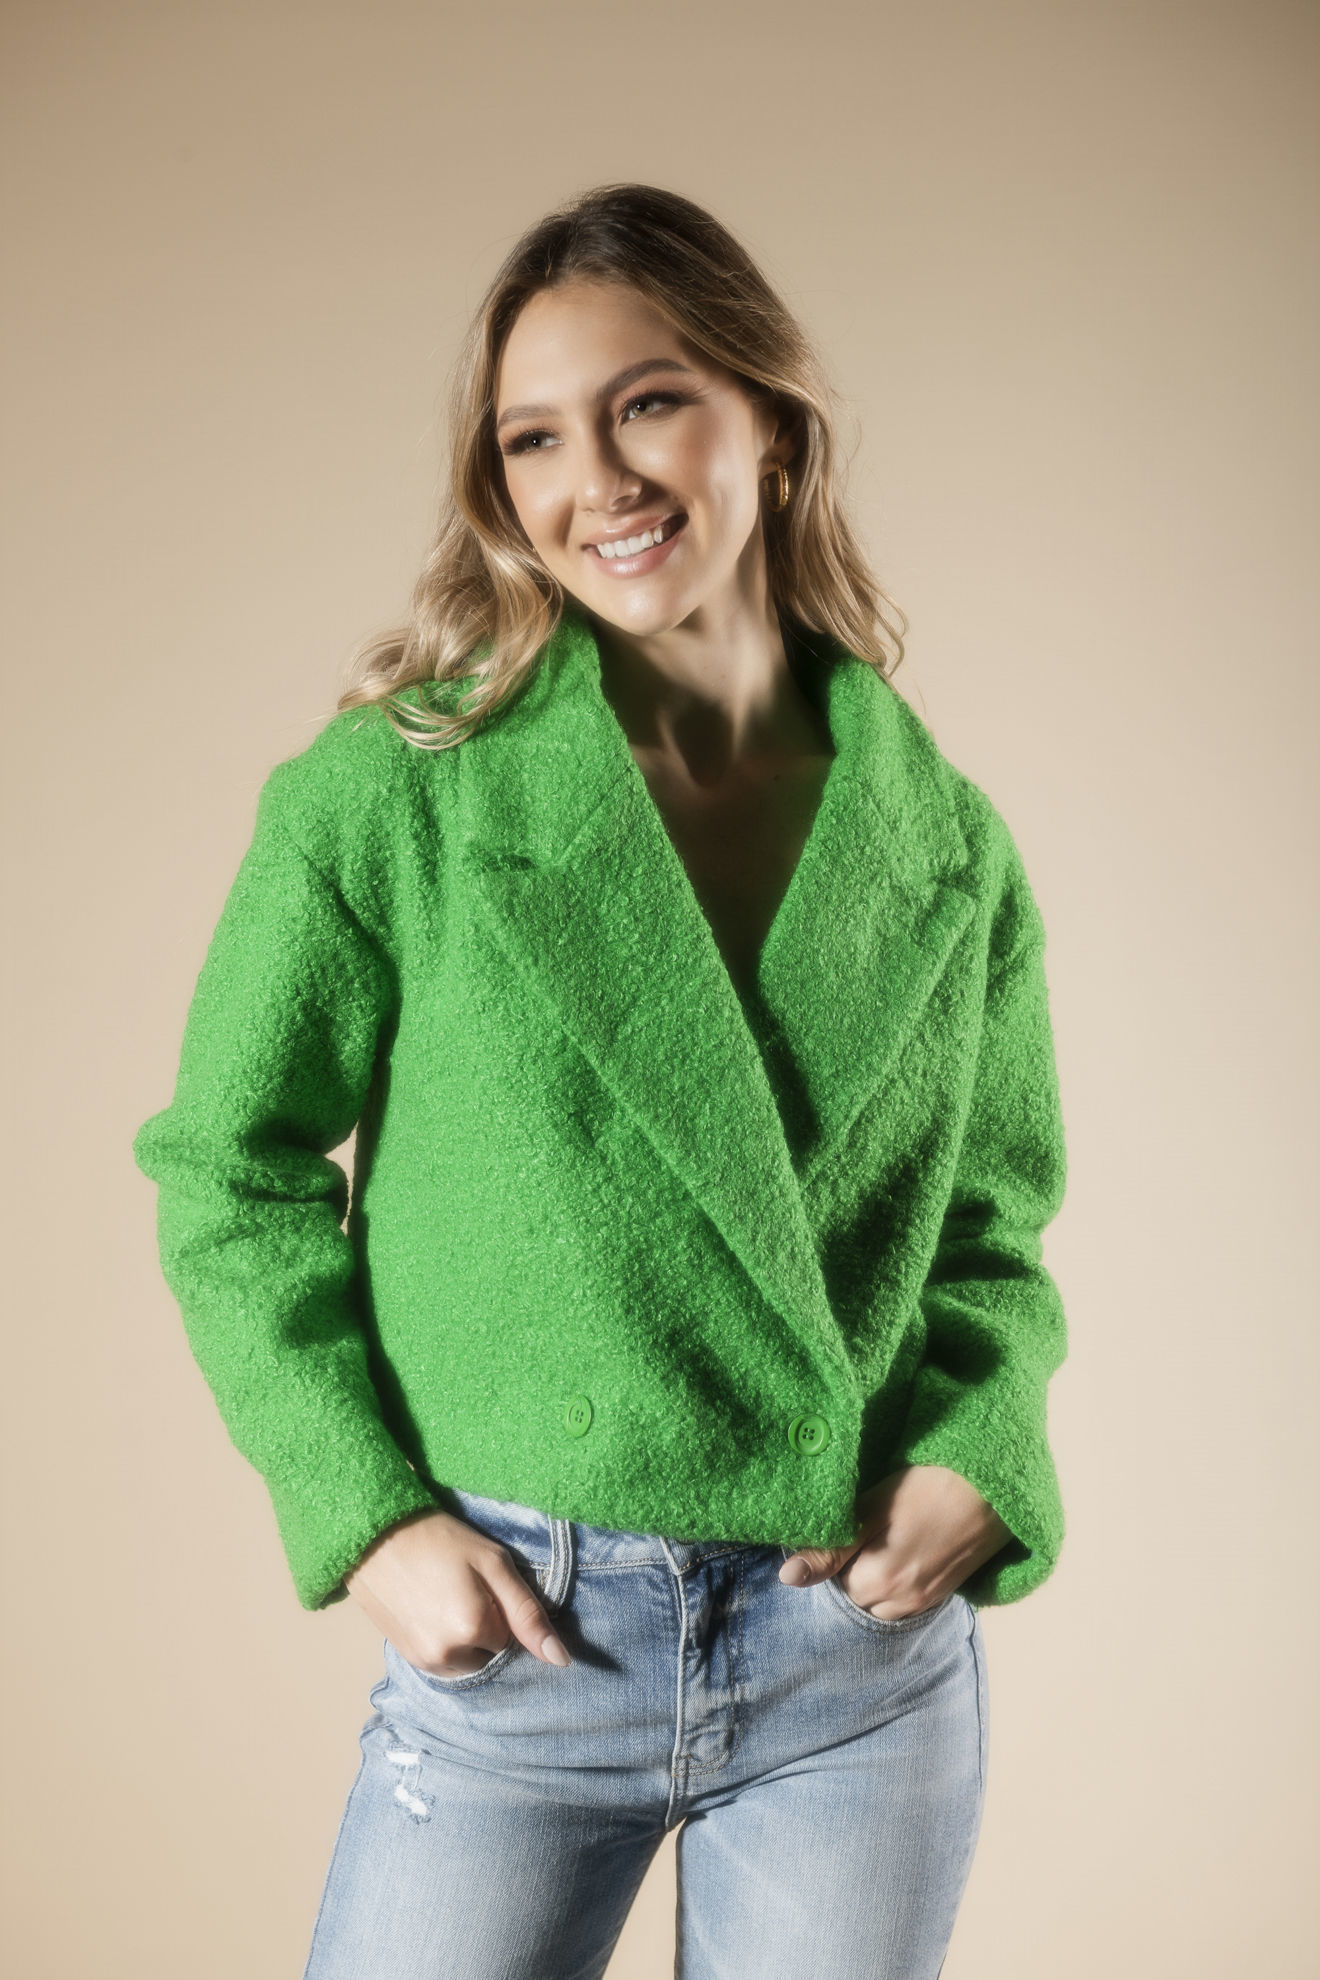 Imagen de Textured Wool Jacket     (Exclusivo Pagina)